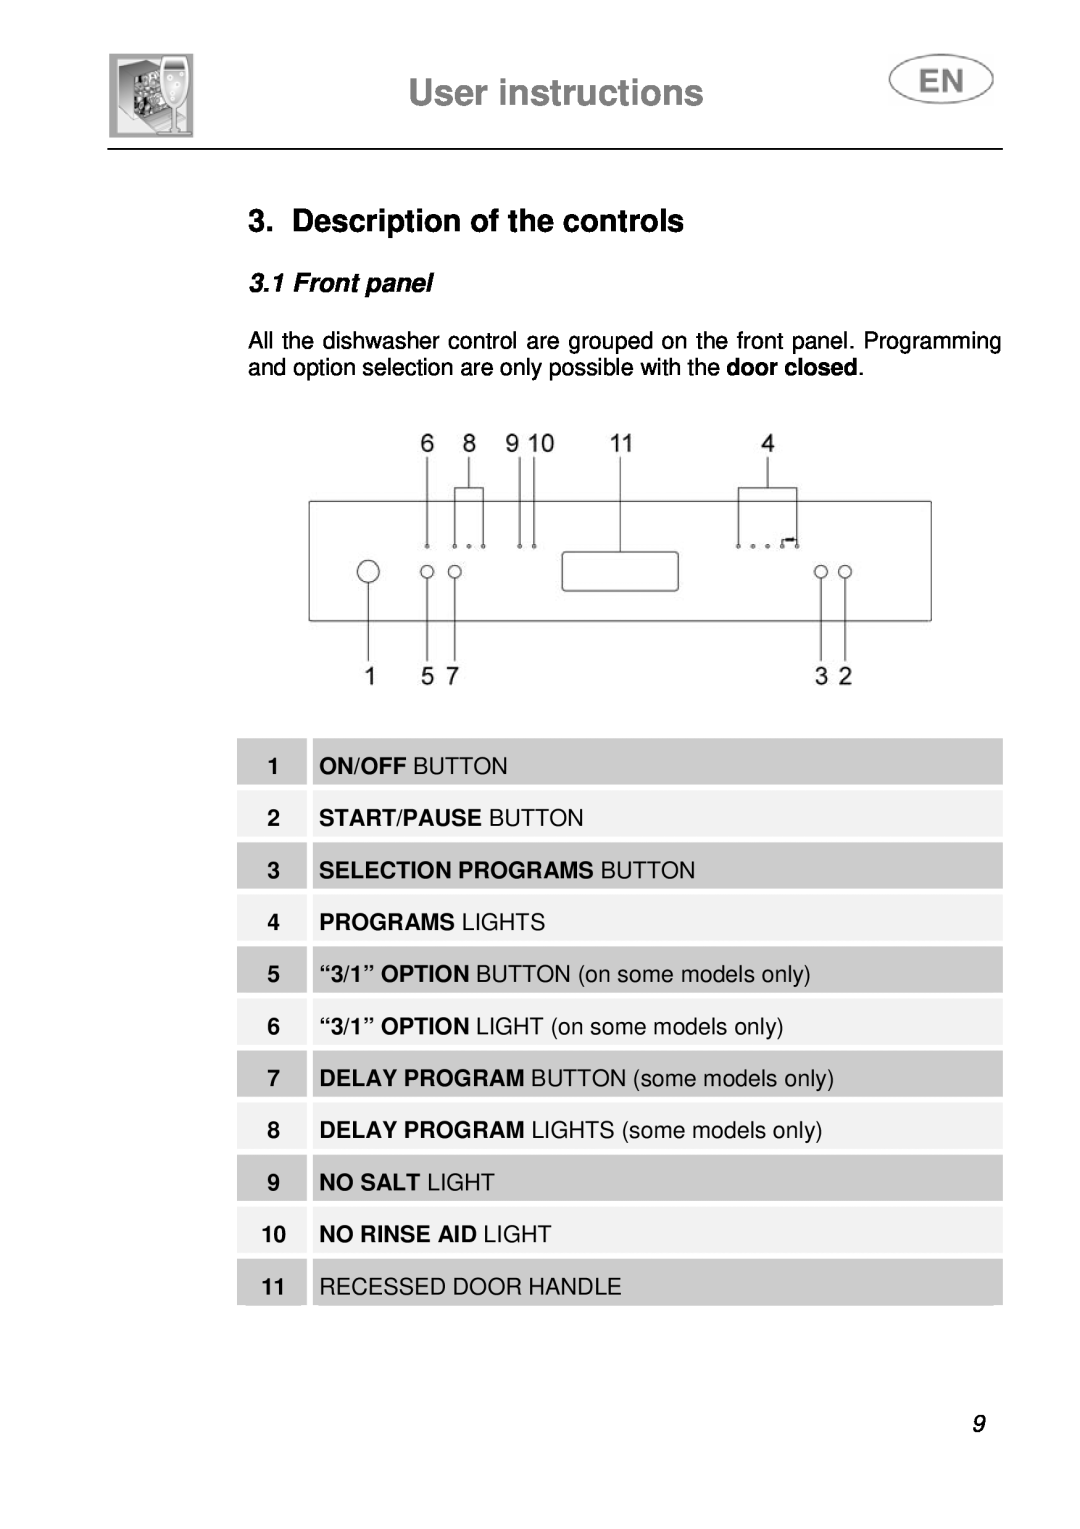 Smeg DFC612BK, DFC612S instruction manual User instructions, Description of the controls, Front panel, Programs Lights 